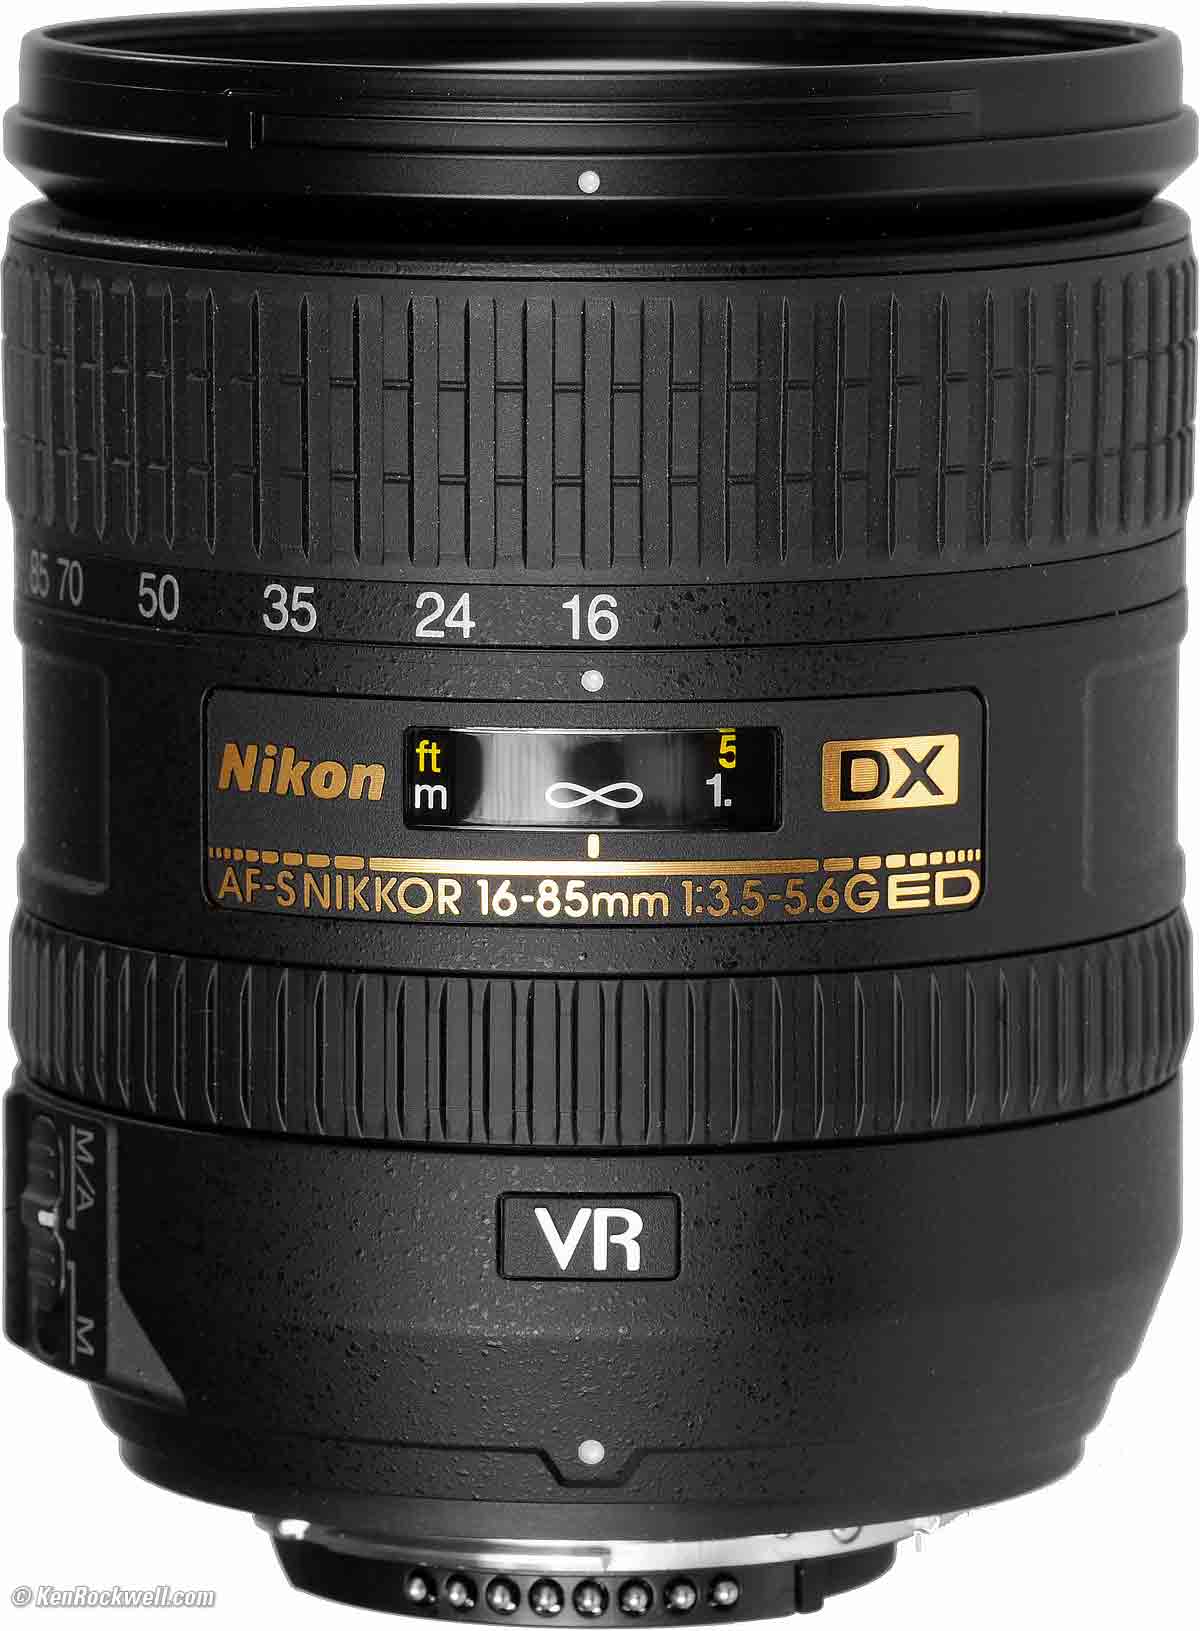 カメラ レンズ(ズーム) Nikon 16-85mm Review